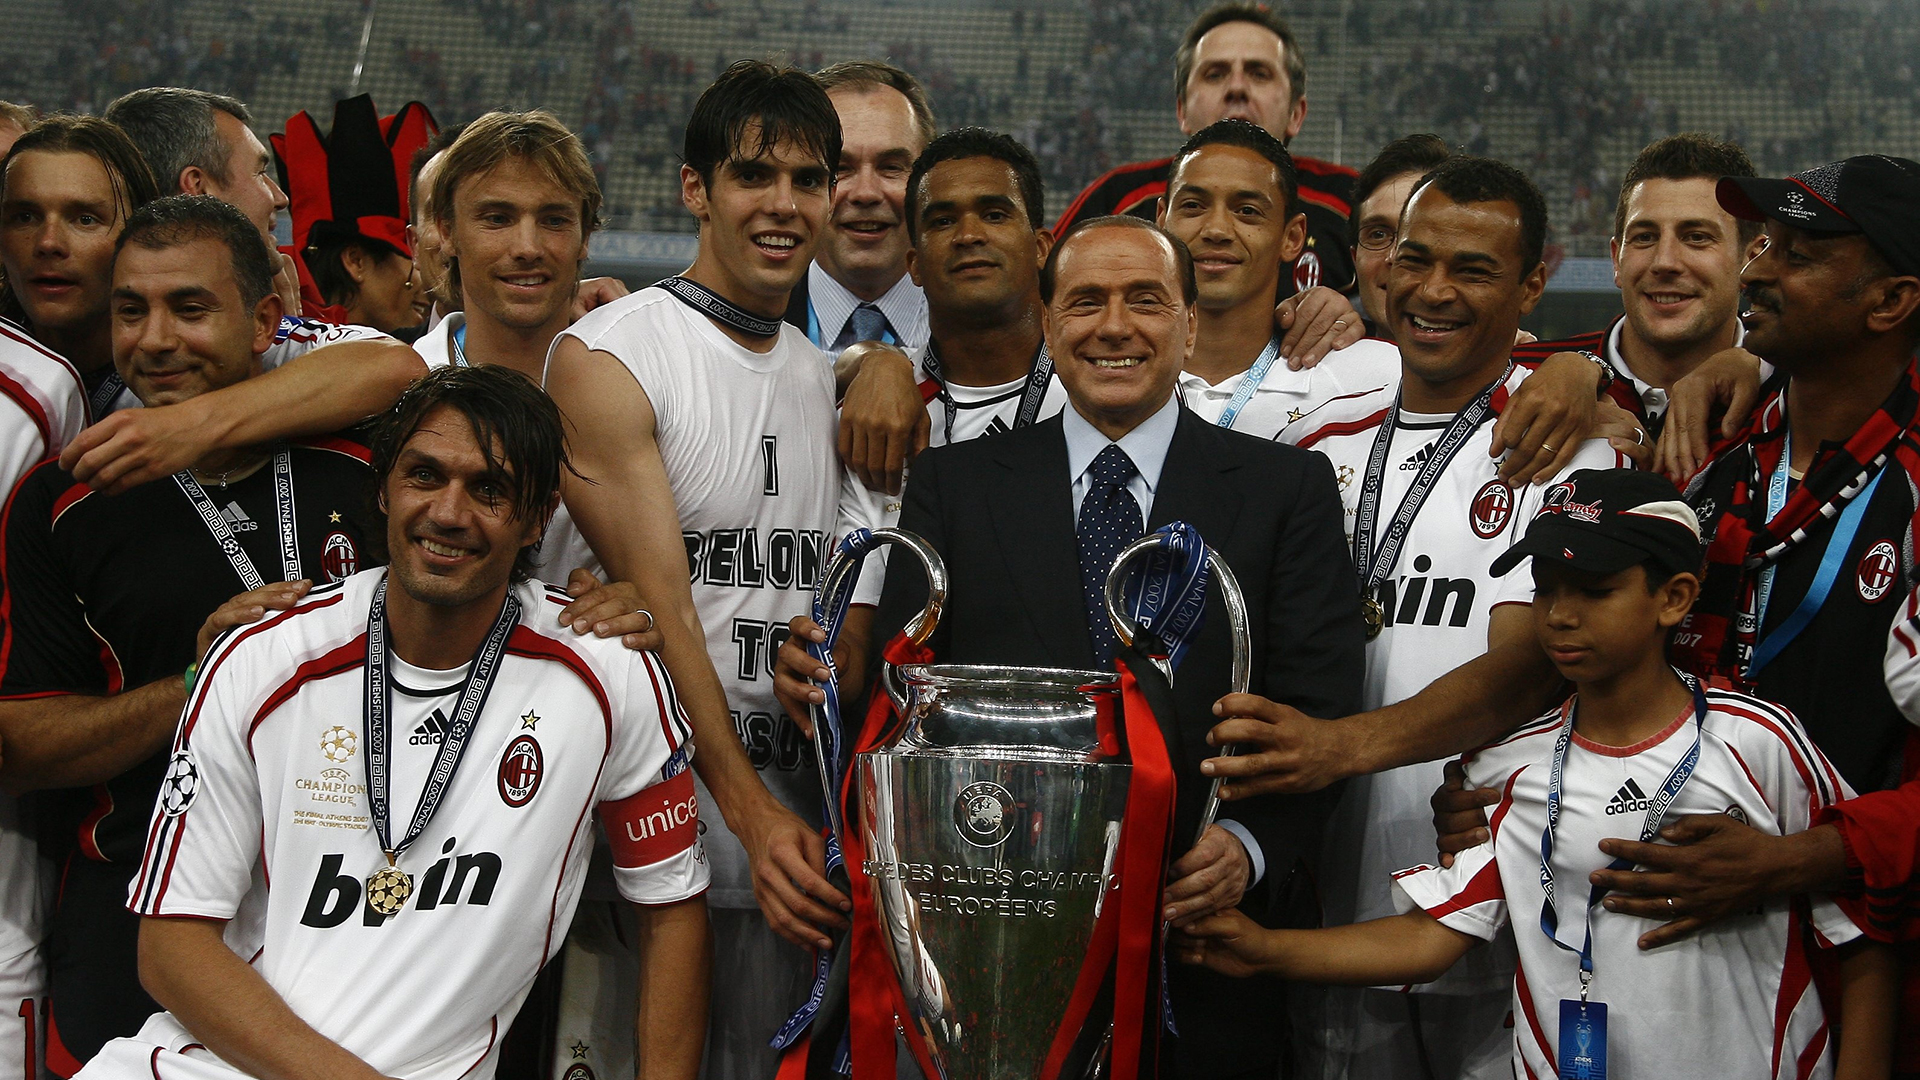 Los jugadores del AC Milan celebran la victoria de la Champions League 2006-2007 con su presidente Silvio Berlusconi. (liewig christian/Corbis via Getty Images)